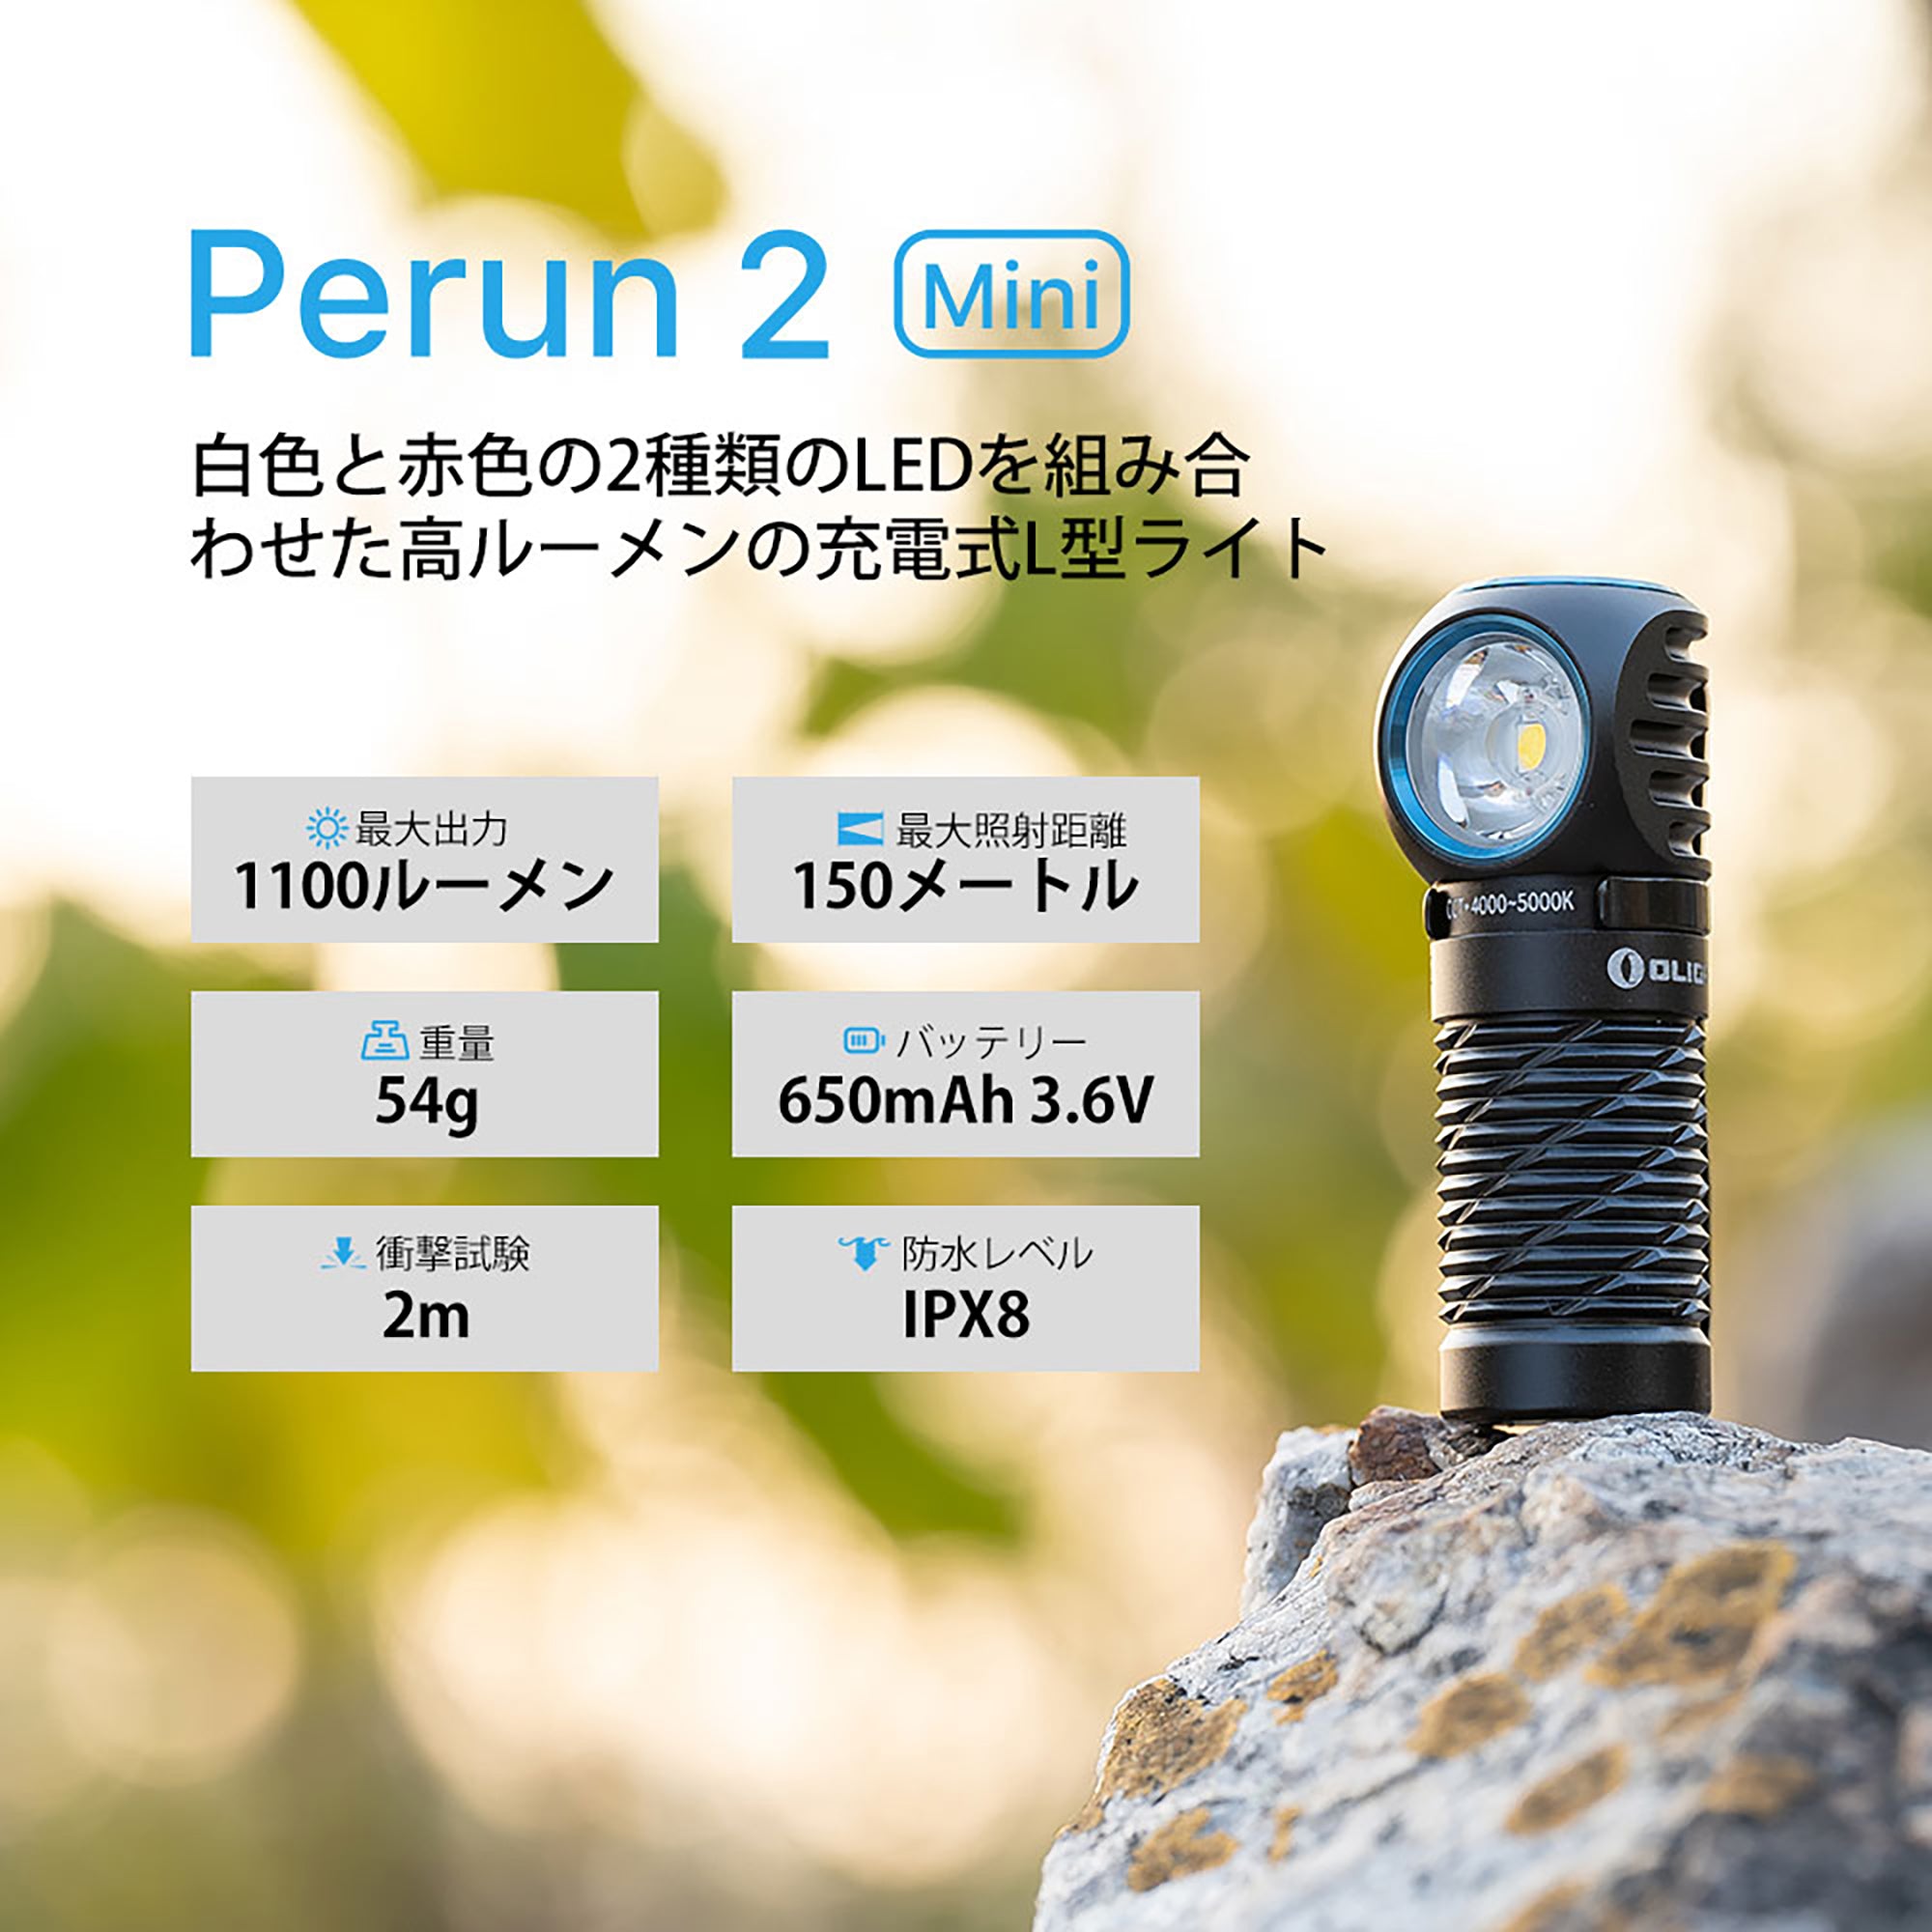 Perun 2 Mini [OLIGHT]